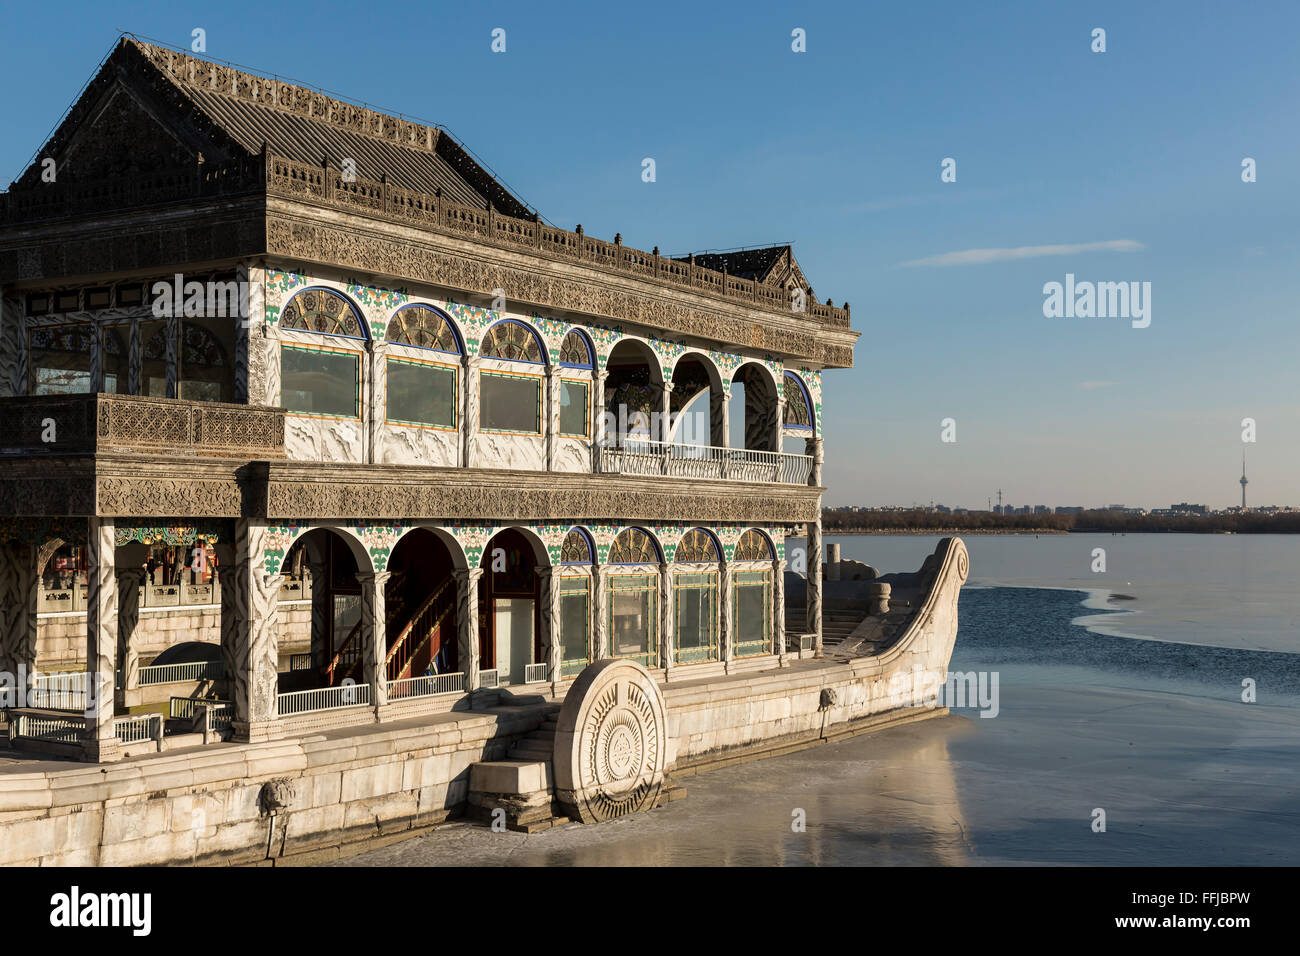 En bateau sur le lac Kunming gelé de Summer Palace - Beijing, Chine. Banque D'Images